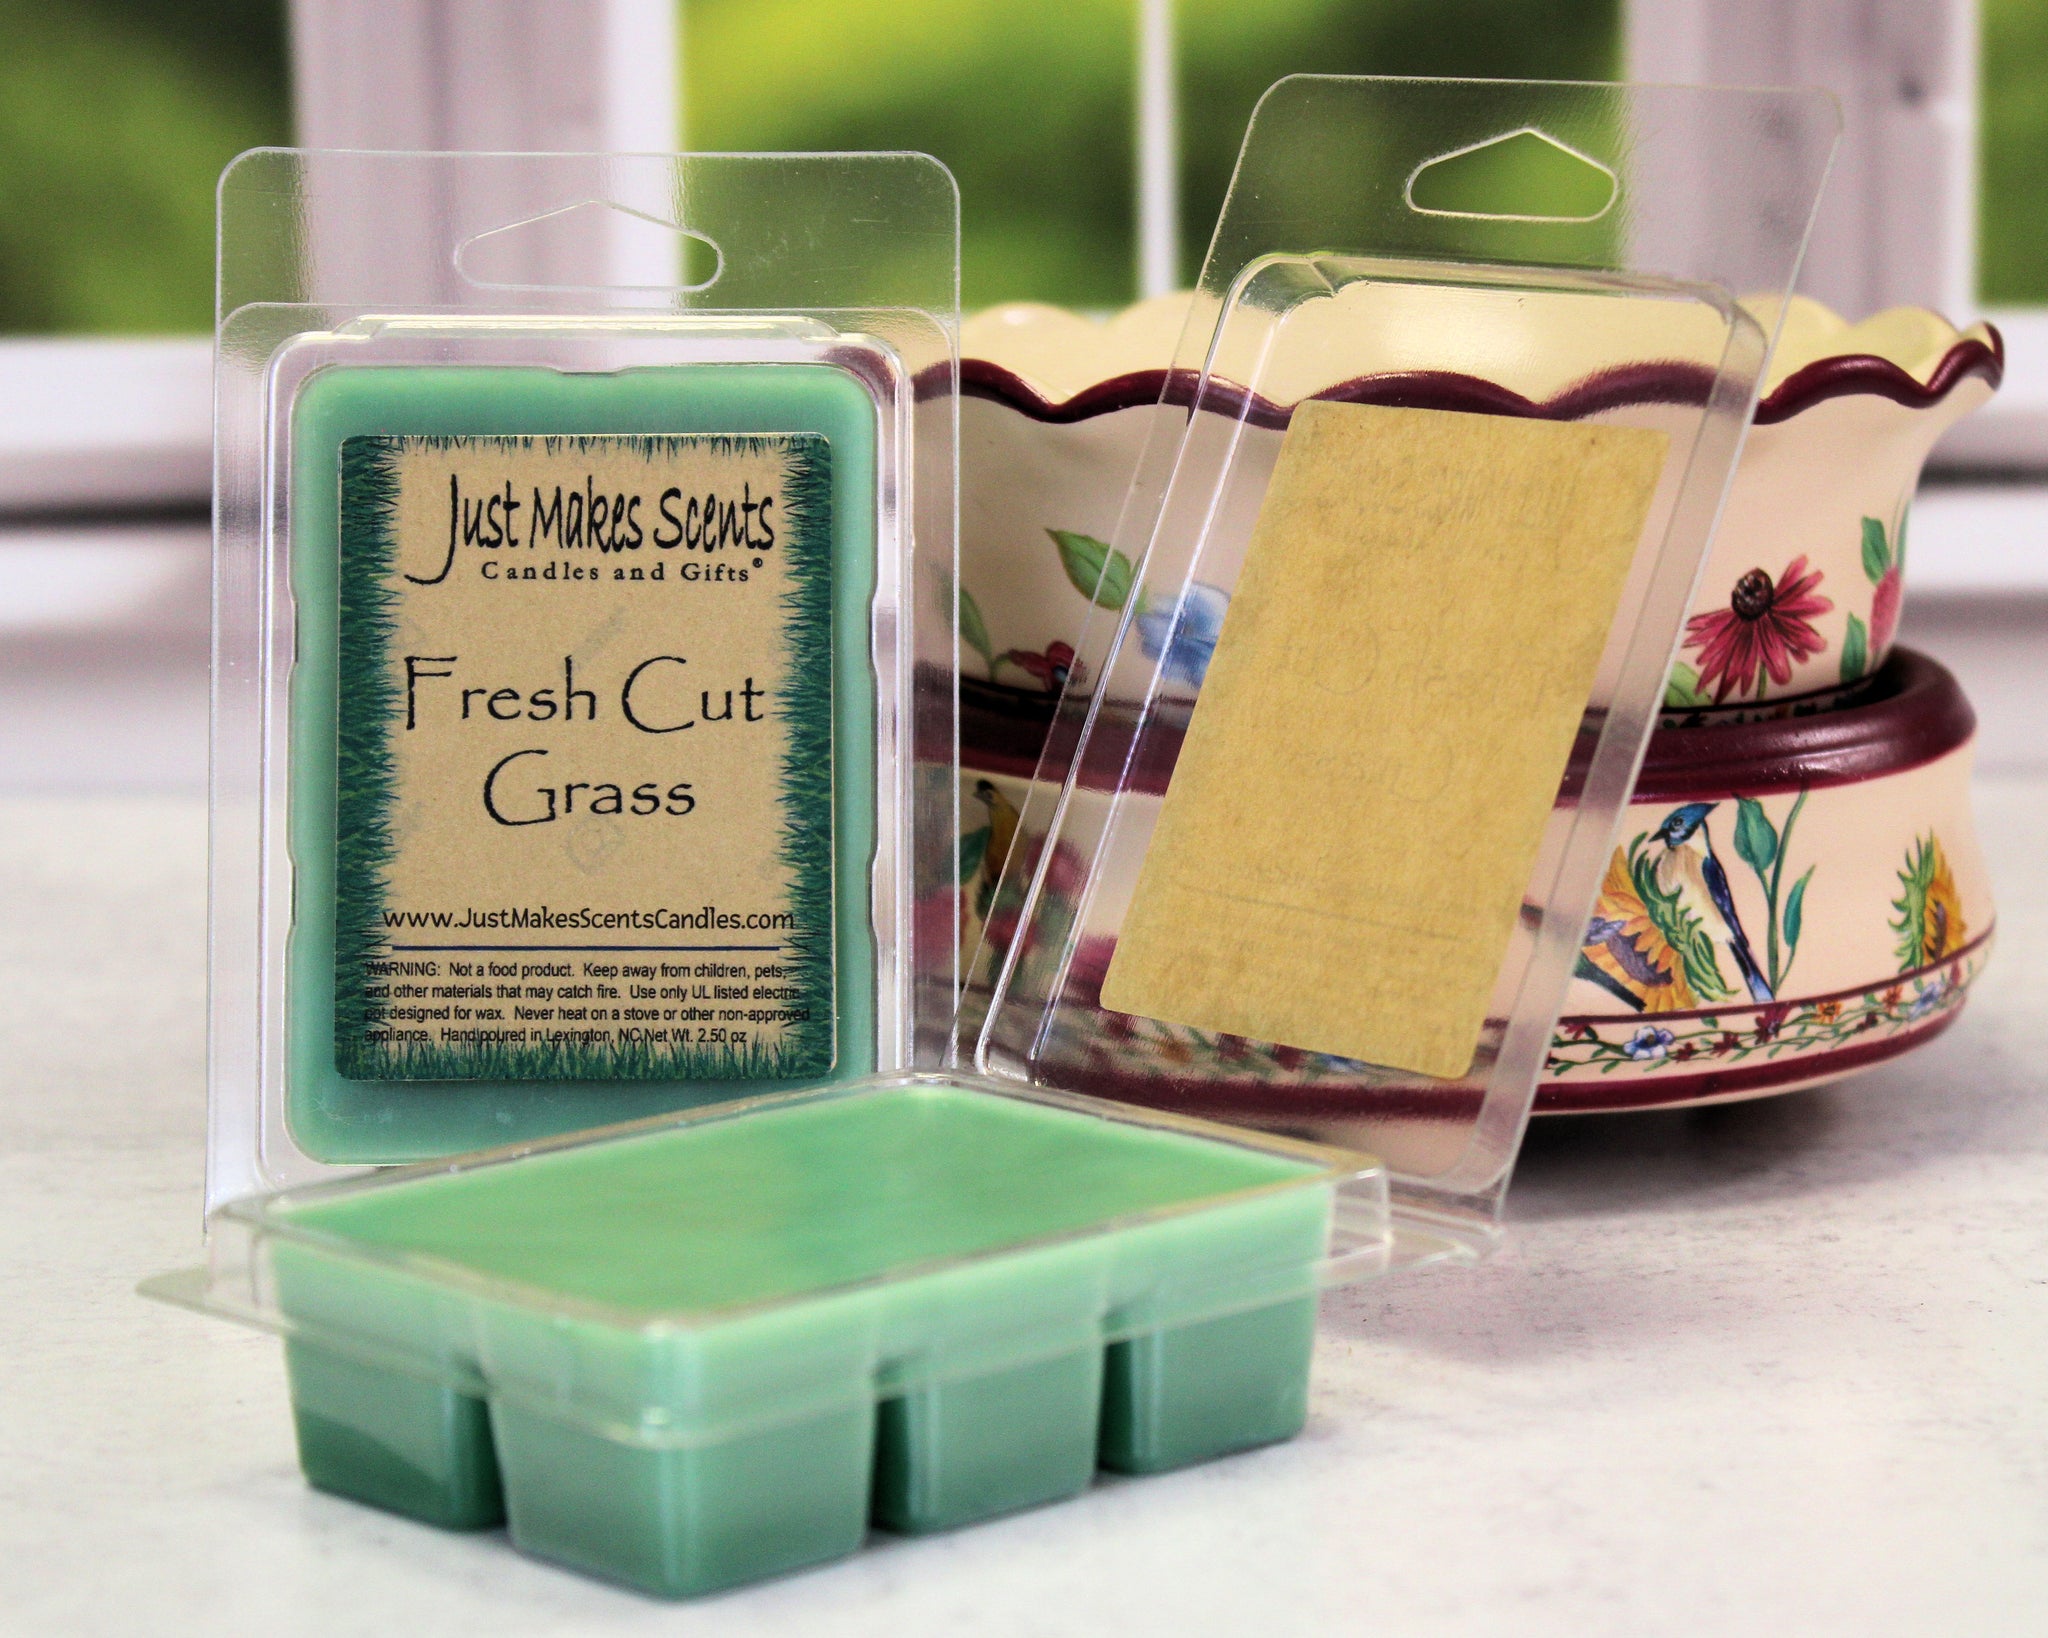 Wax Tarts - AuraDecor Wax Melts Tarts Lemon Grass Manufacturer